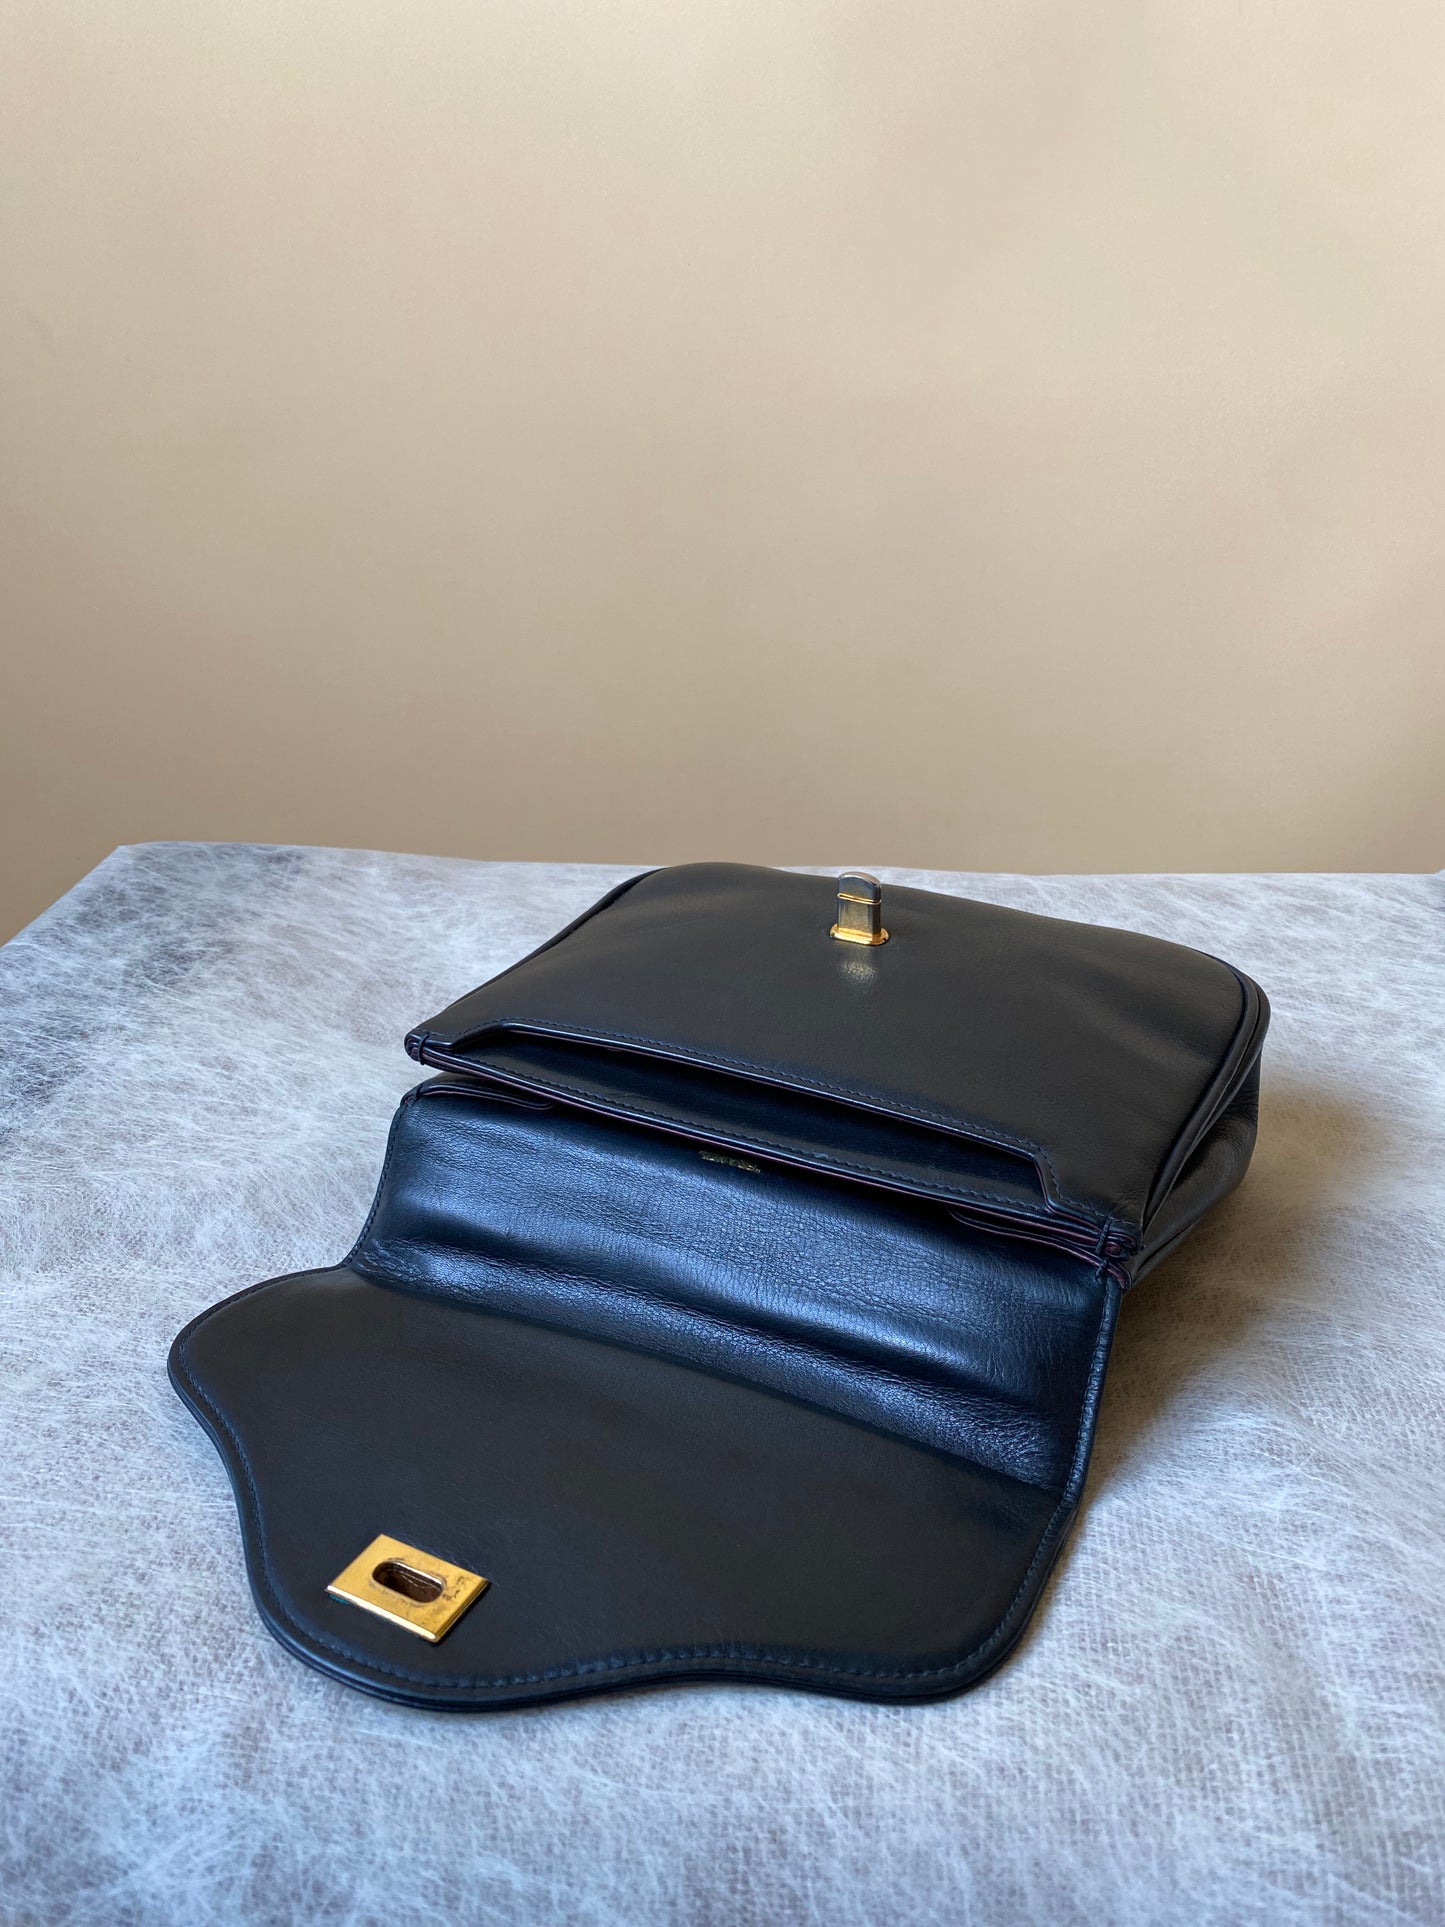 Vintage Franzi 1864 Black Leather Handheld Bag